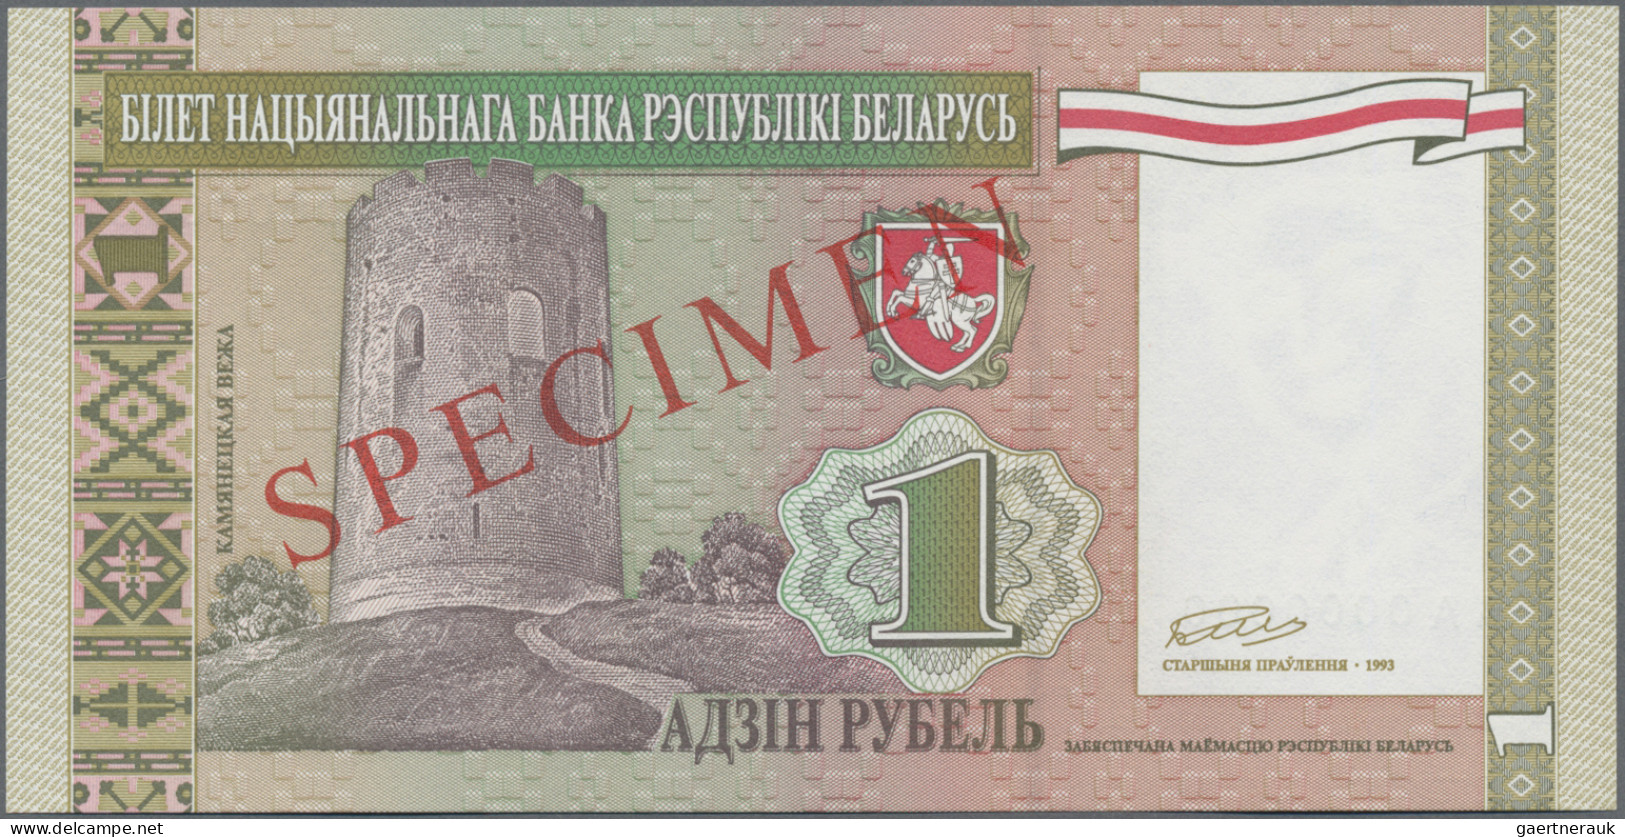 Belarus: National Bank Of Belarus, Set With 6 Unissued SPECIMEN 1, 5, 10, 20, 50 - Belarus